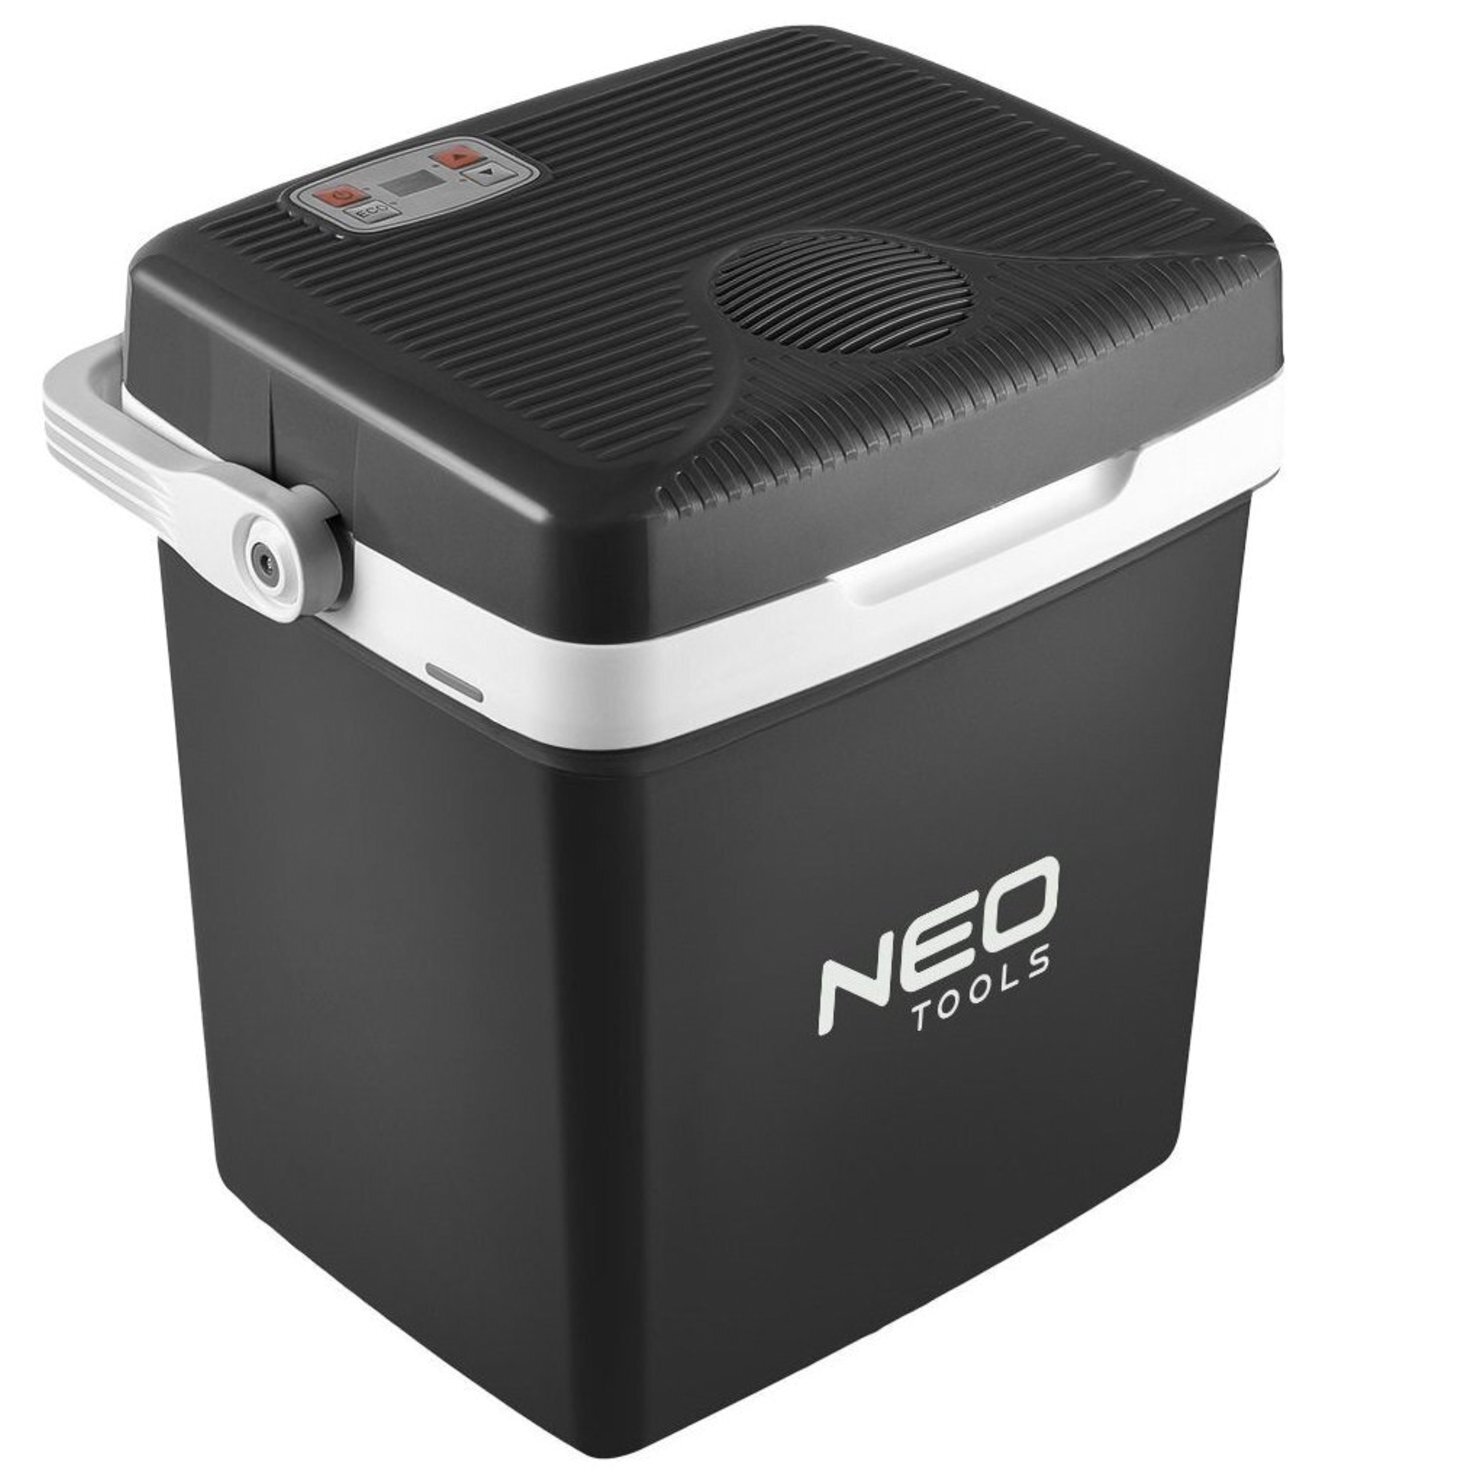 Холодильник мобильный Neo Tools 2в1 подогрев/охлаждение (63-152) фото 